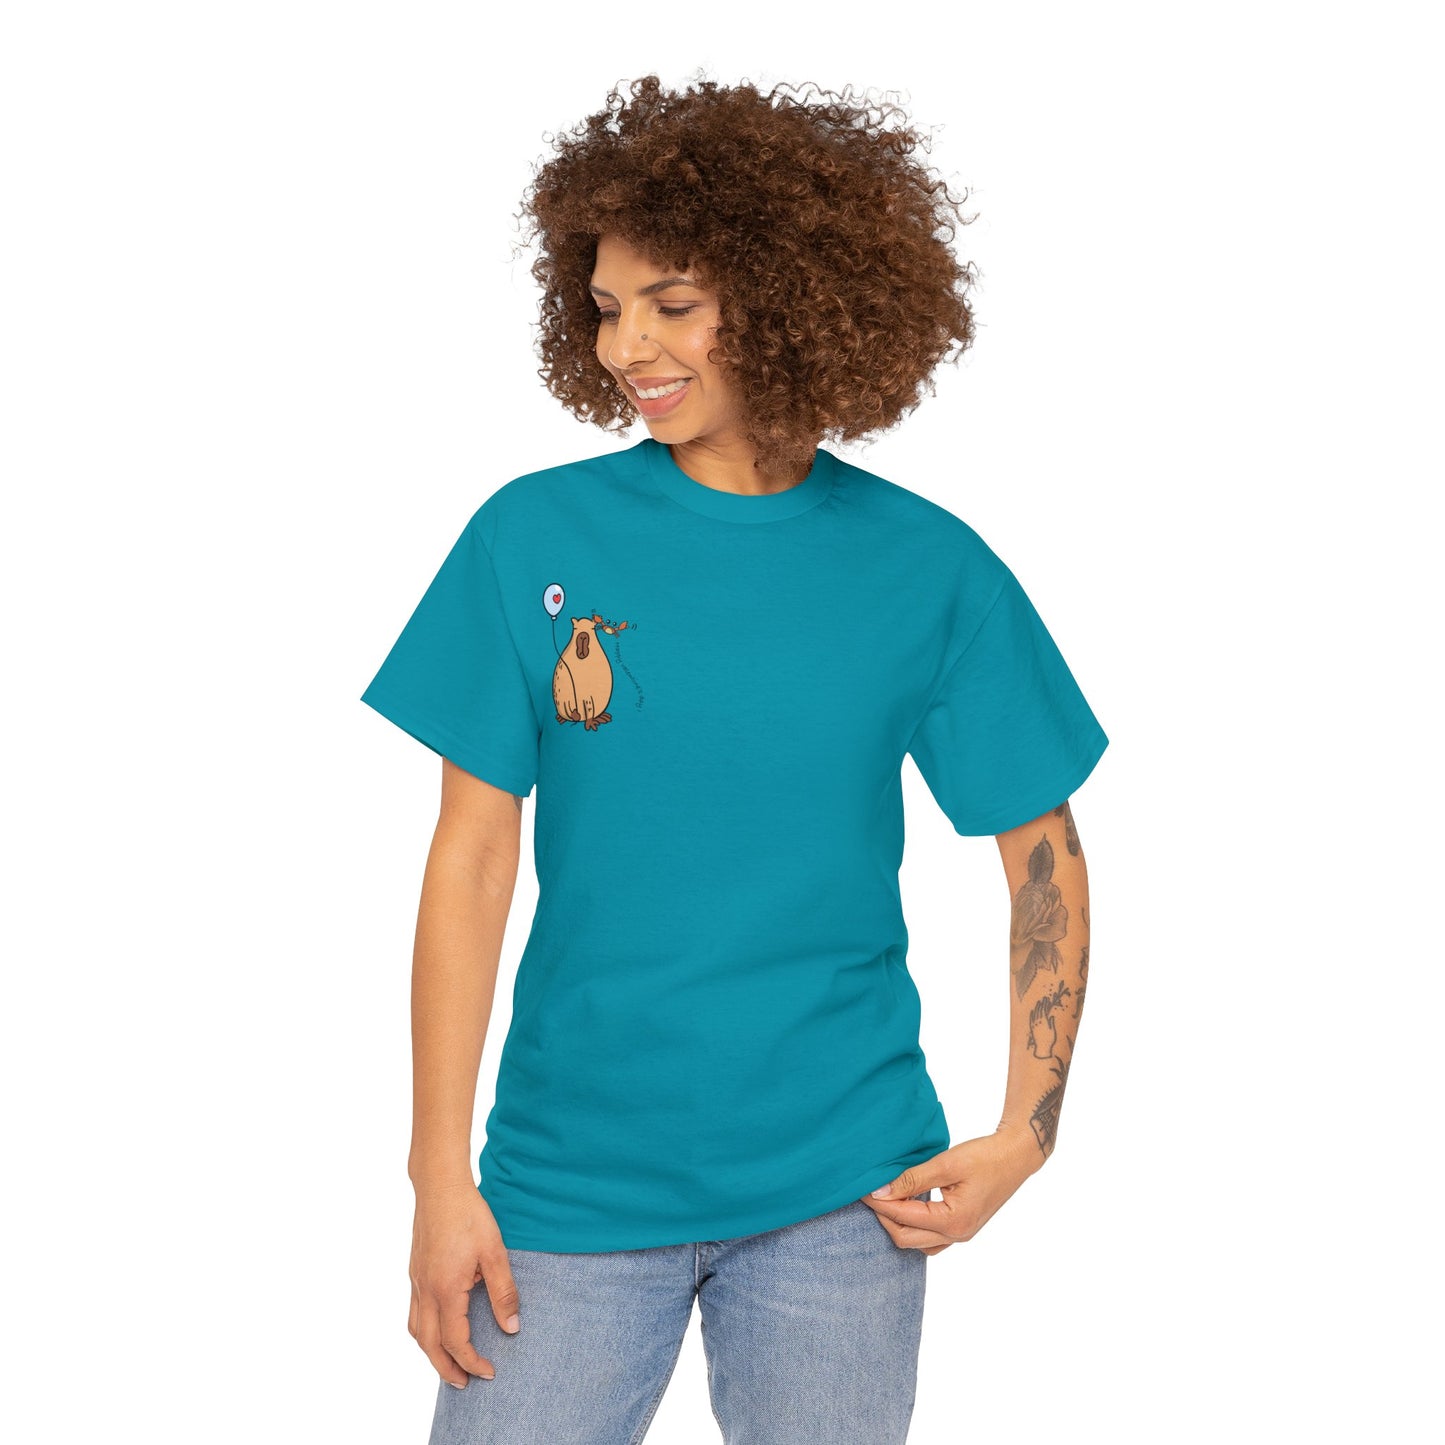 Aquarius T-shirt Women